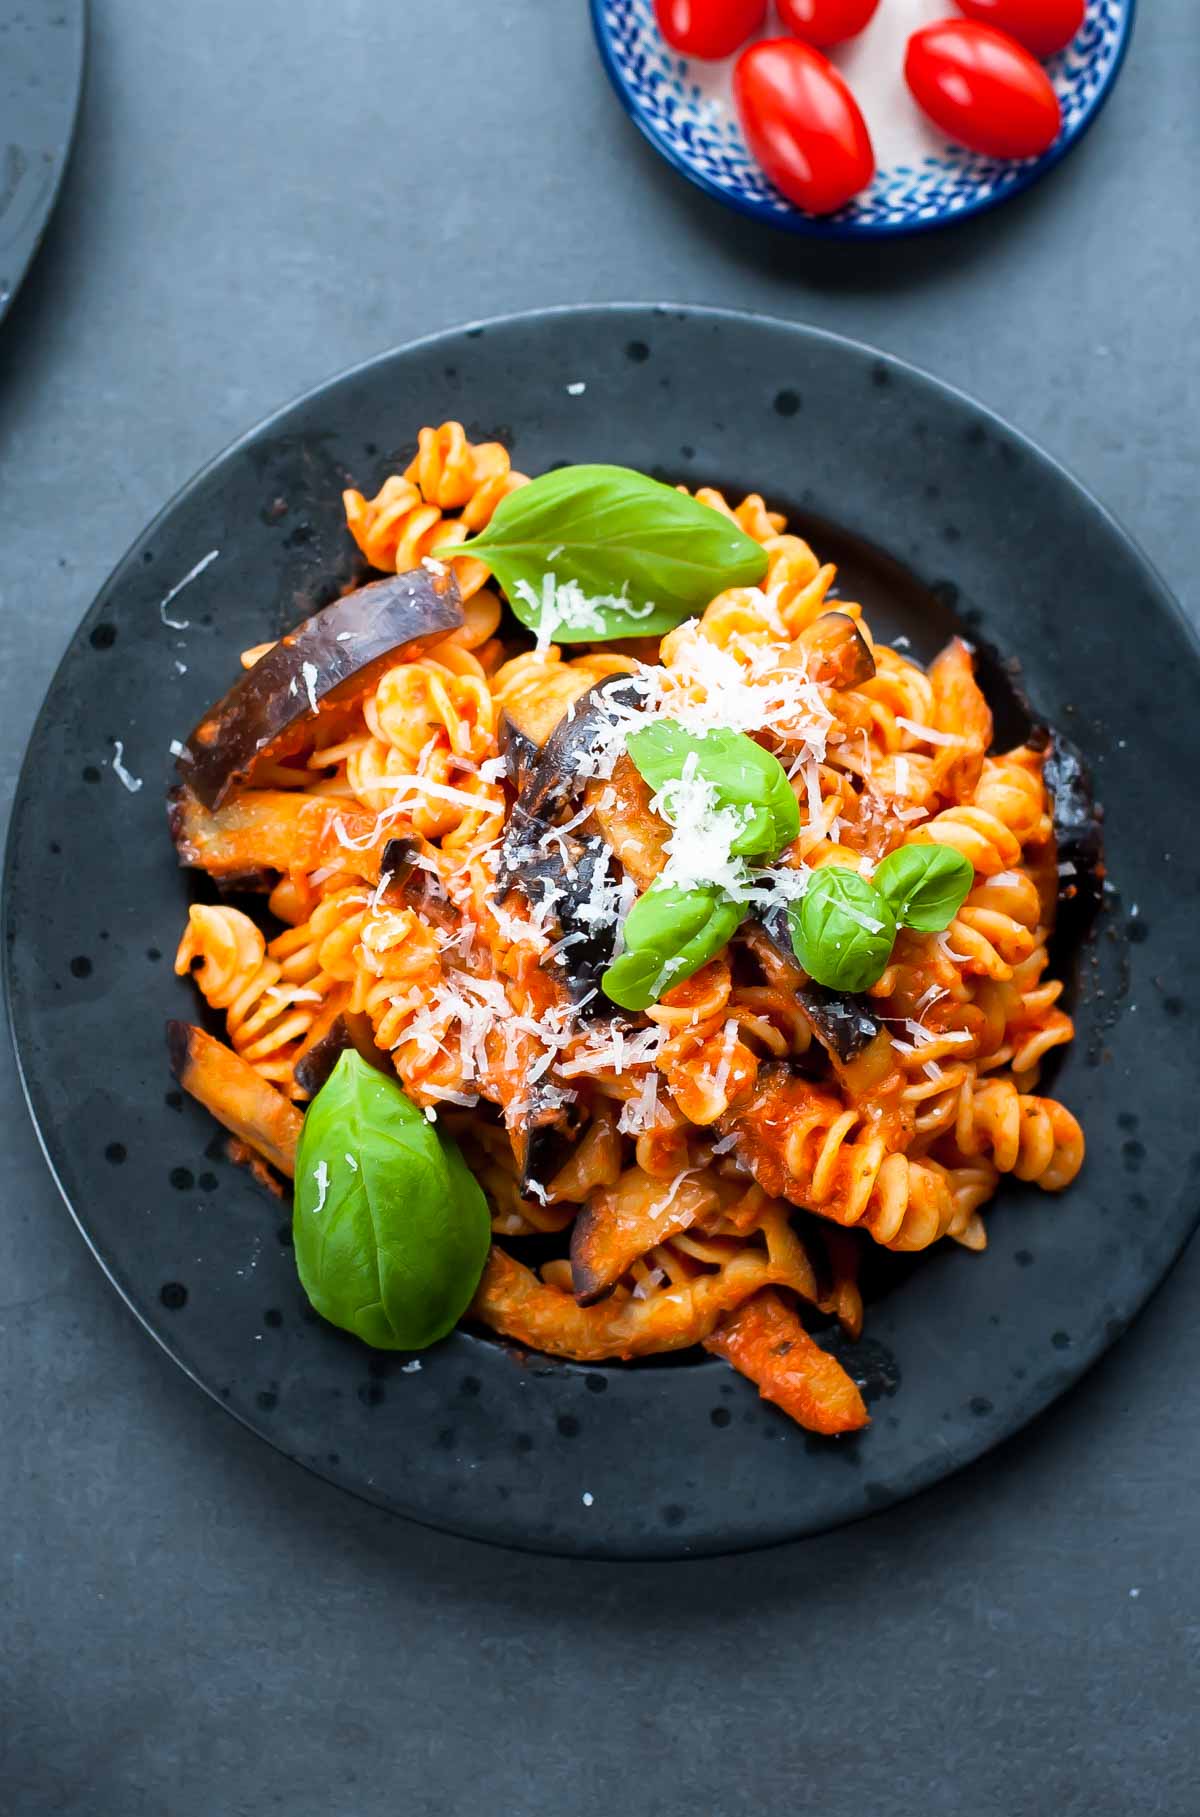 Pasta alla Norma - tomato and eggplant pasta recipe